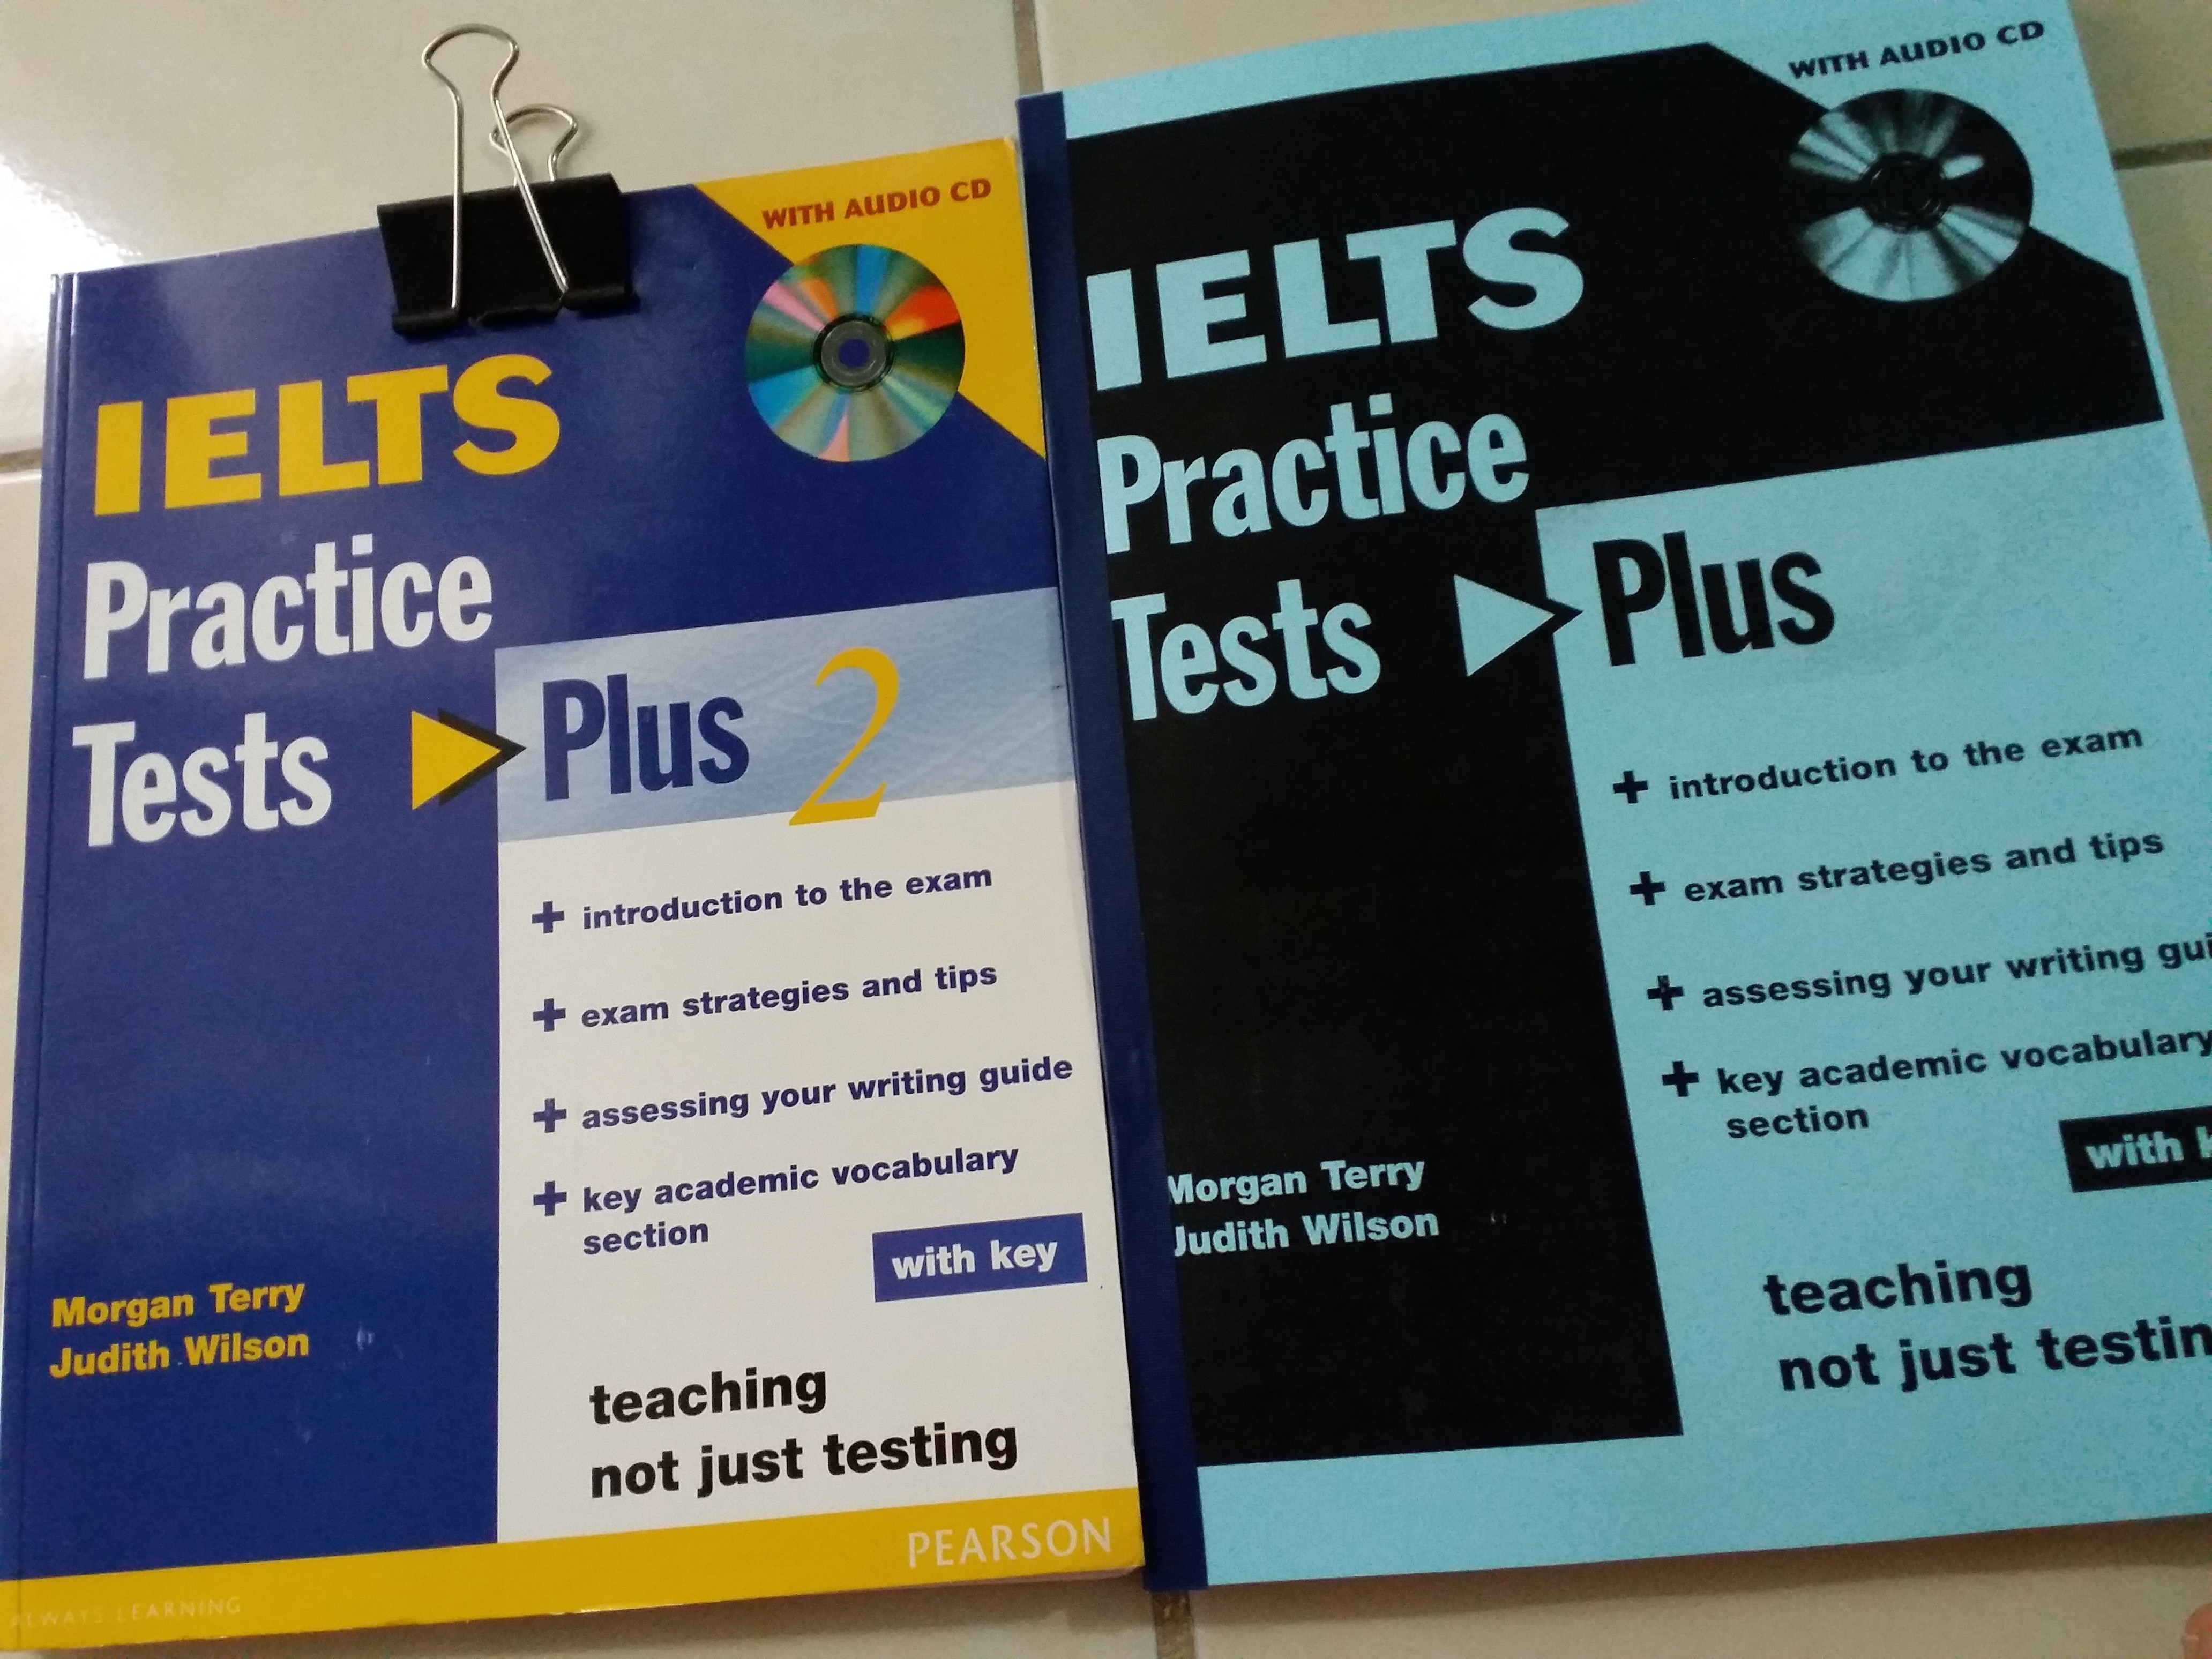 5 плюс тест. IELTS Practice Tests. IELTS Practice Tests Plus 2. IELTS Practice Tests Plus 1. Longman IELTS Practice Tests.